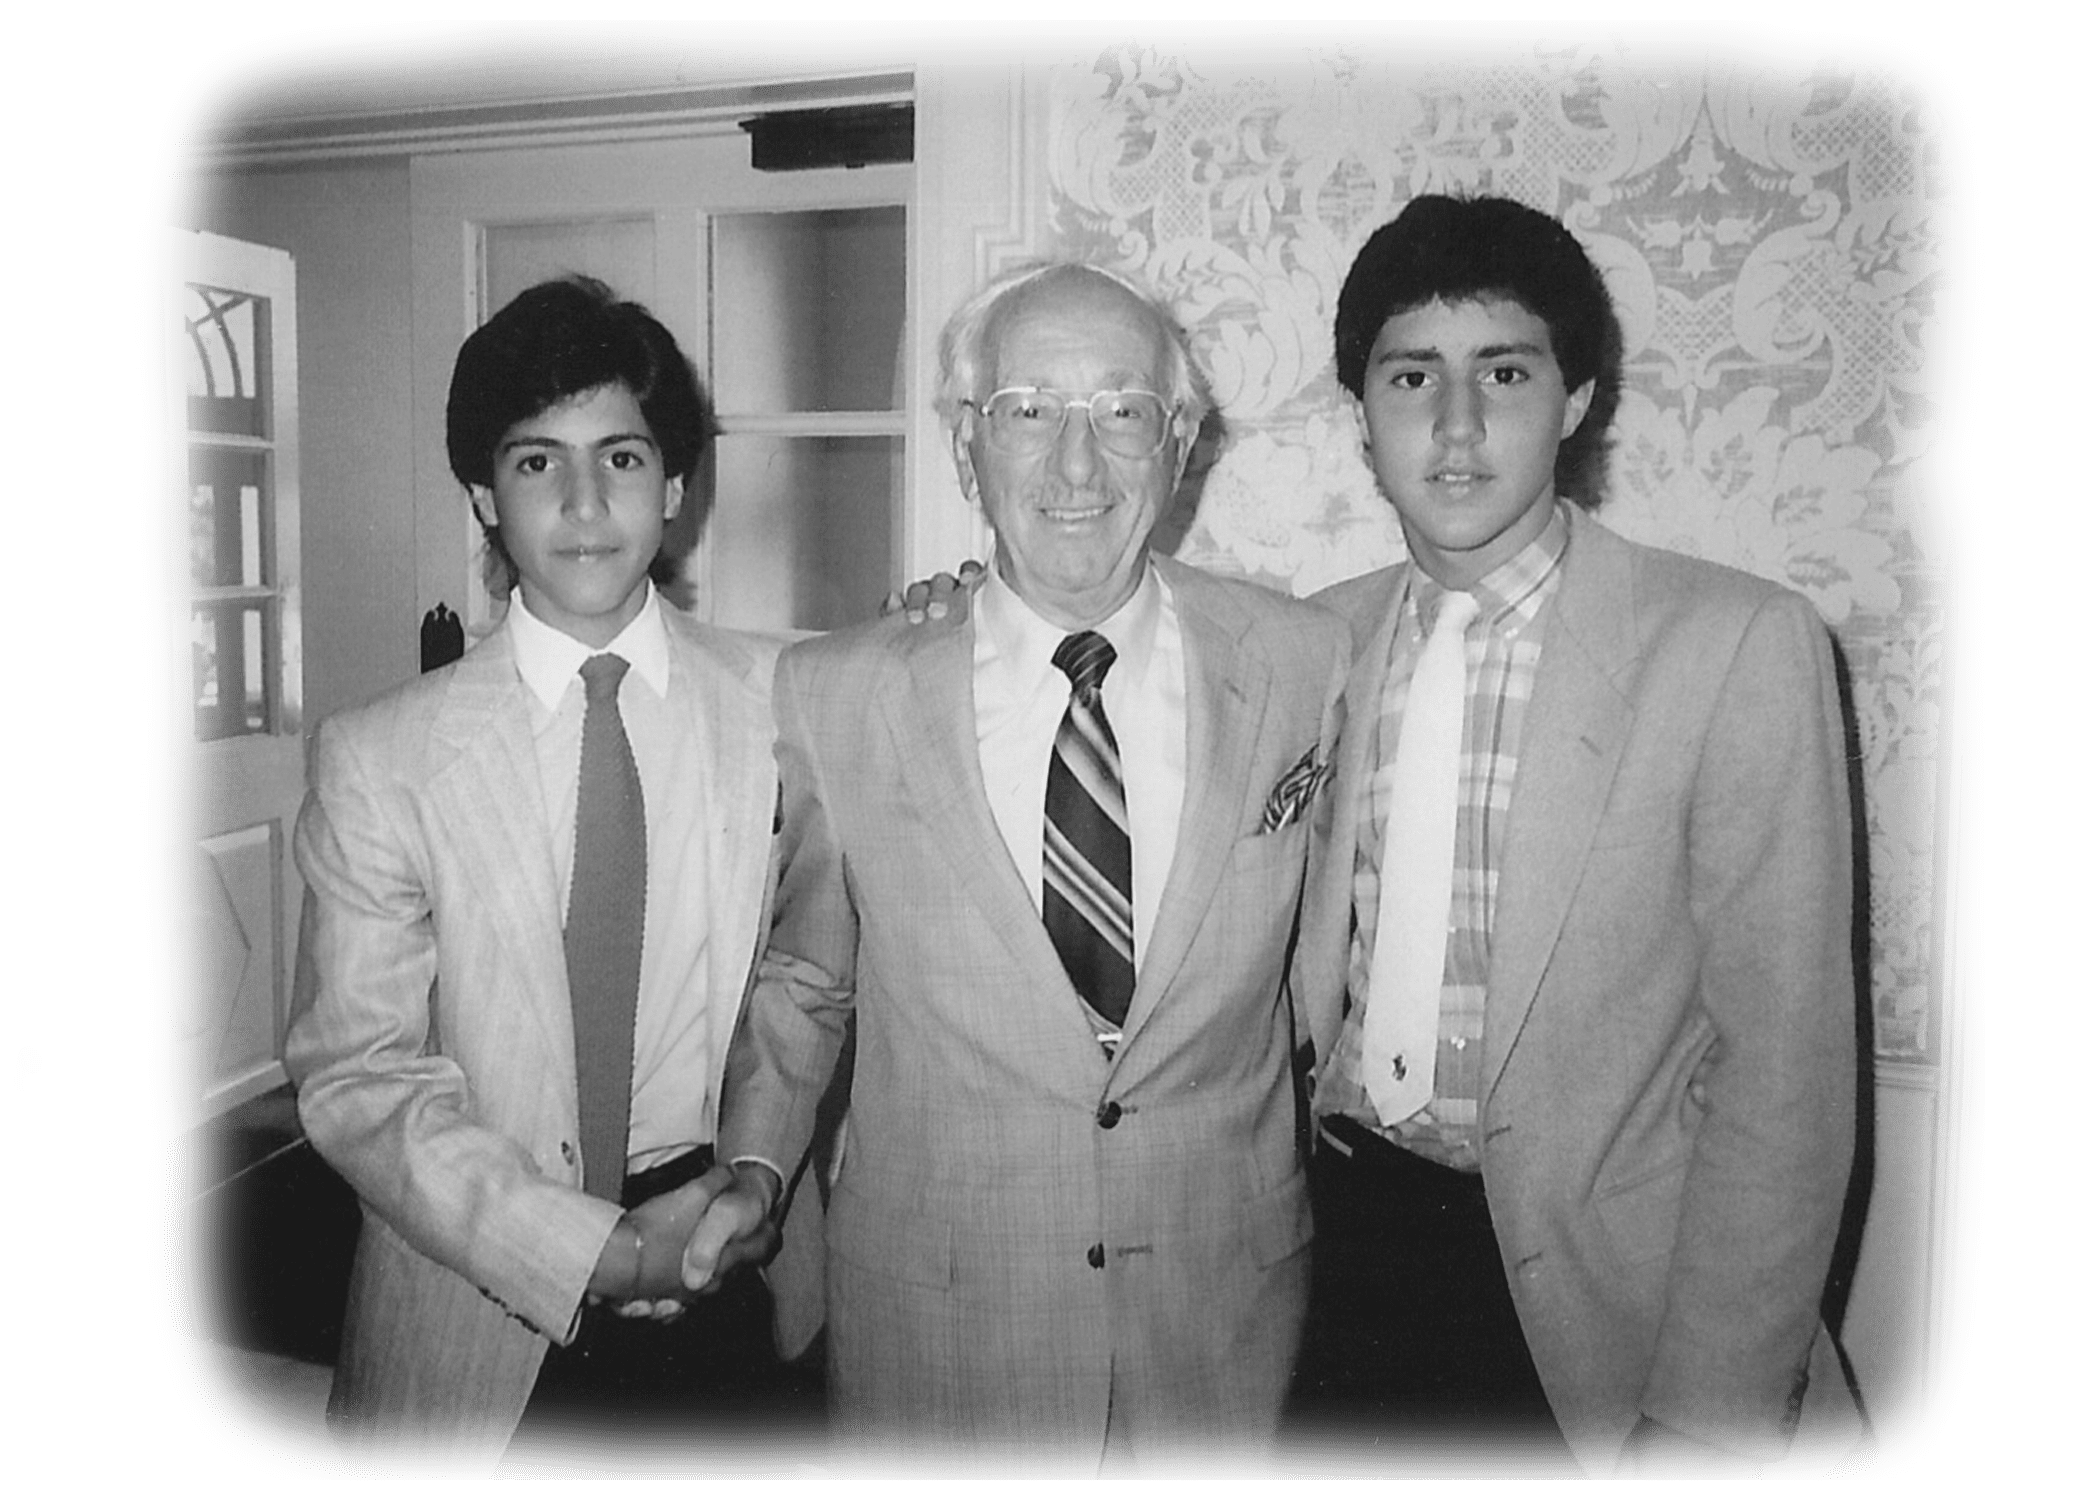 Chad, Alvin & David 1985